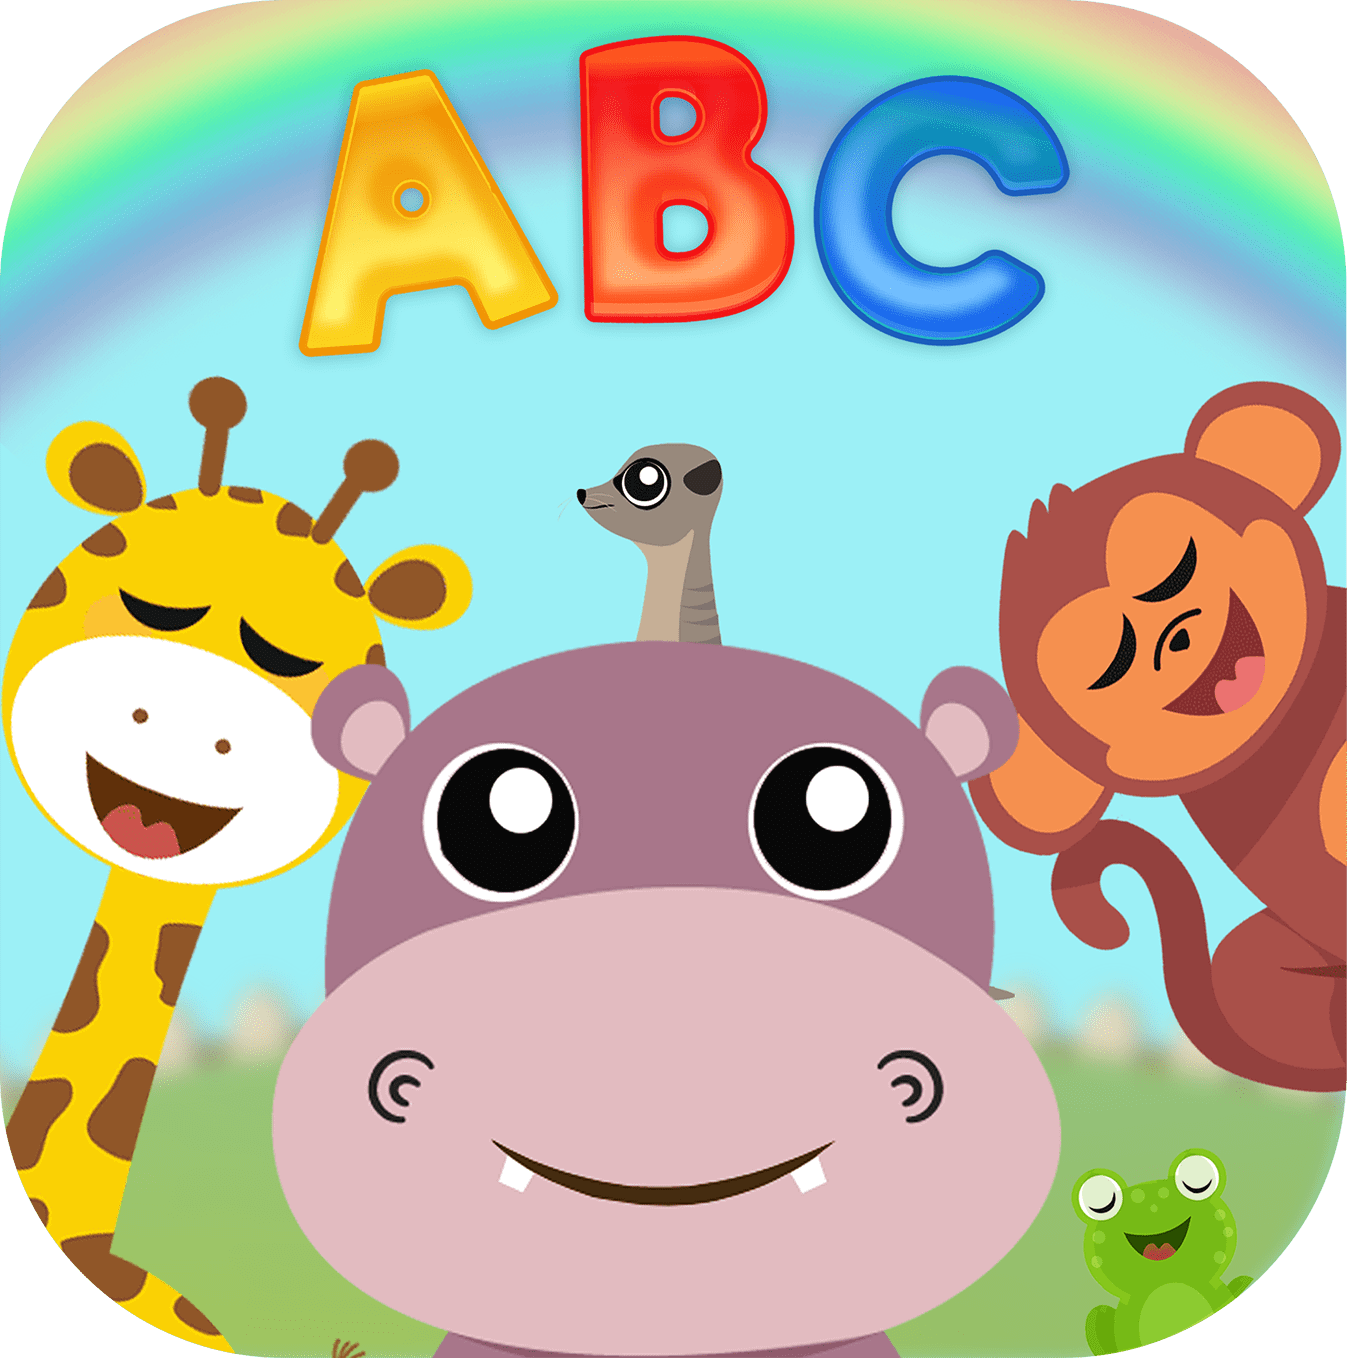 Download do APK de O Reino Infantil: Jogos Educativos Para